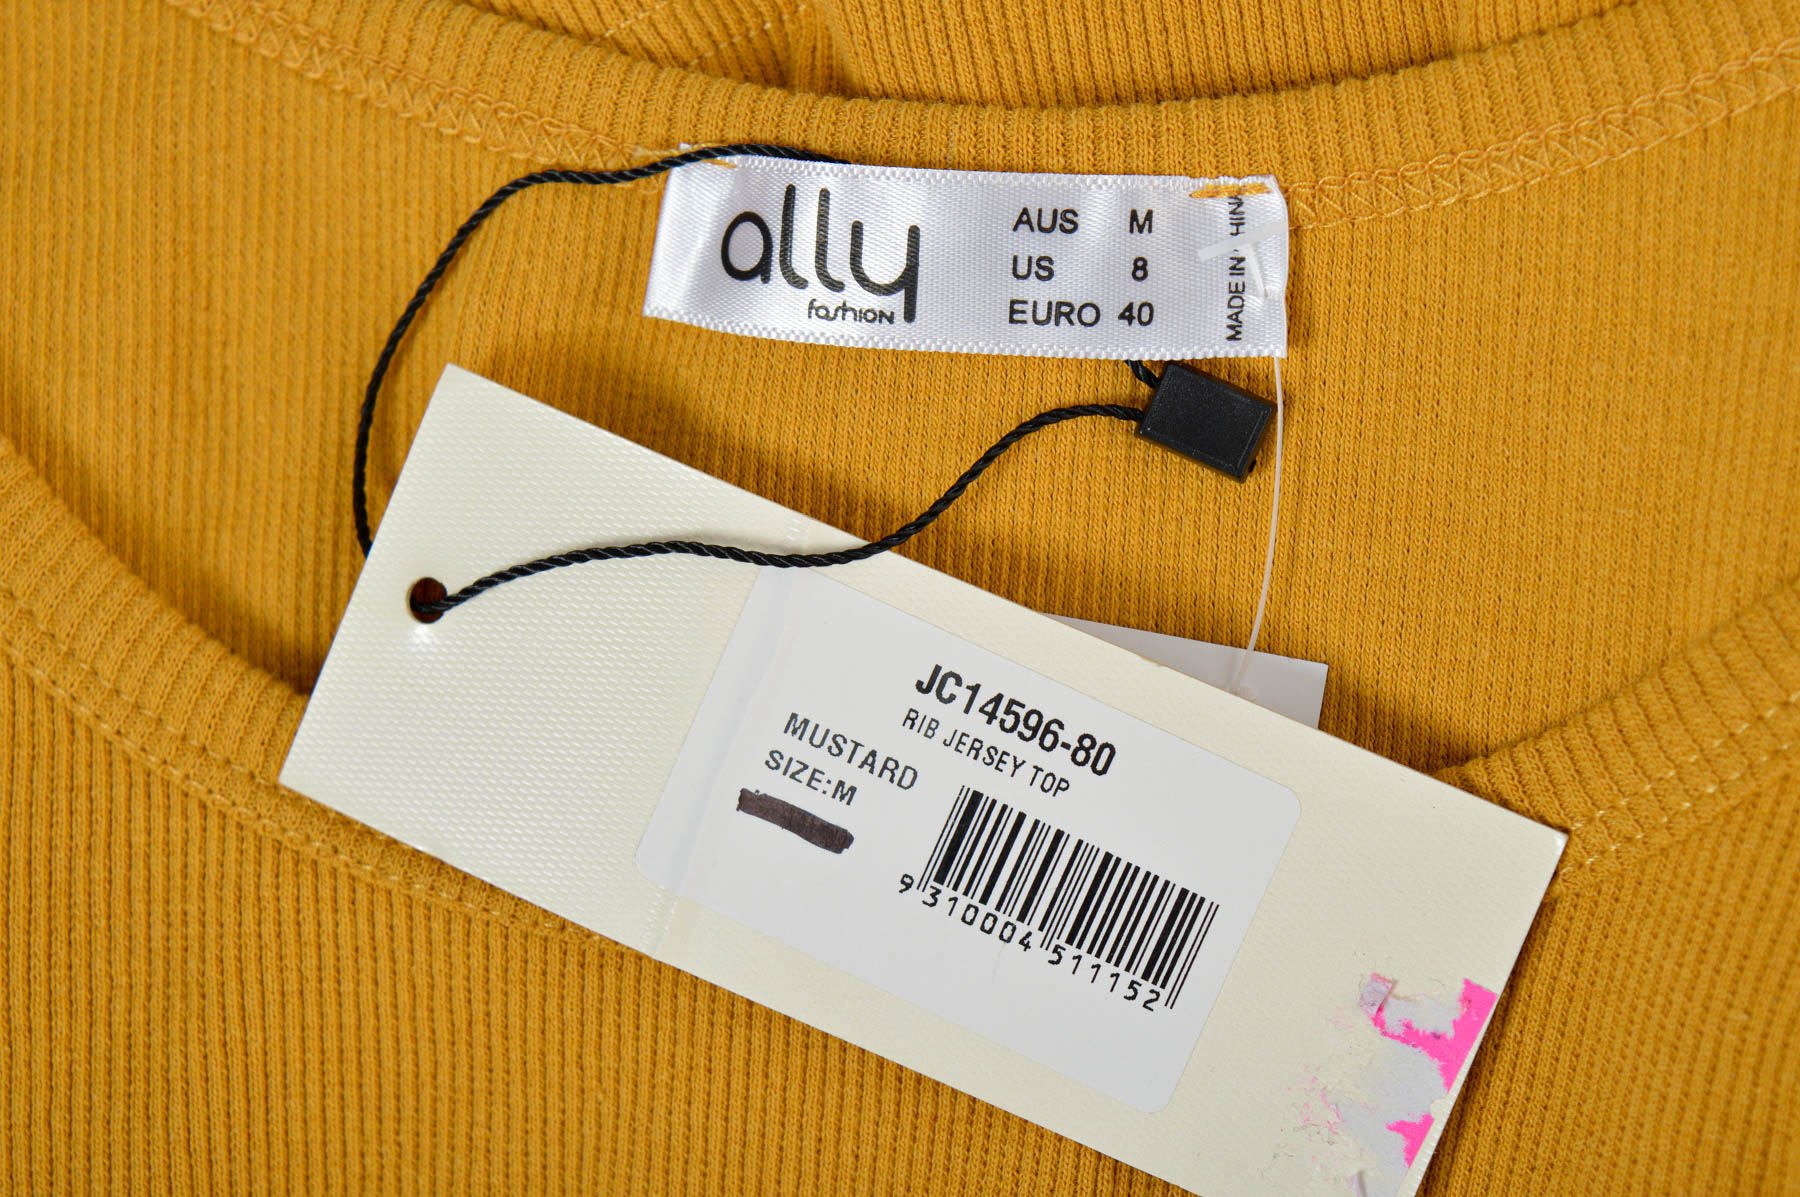 Γυναικεία μπλούζα - Ally fashion - 2